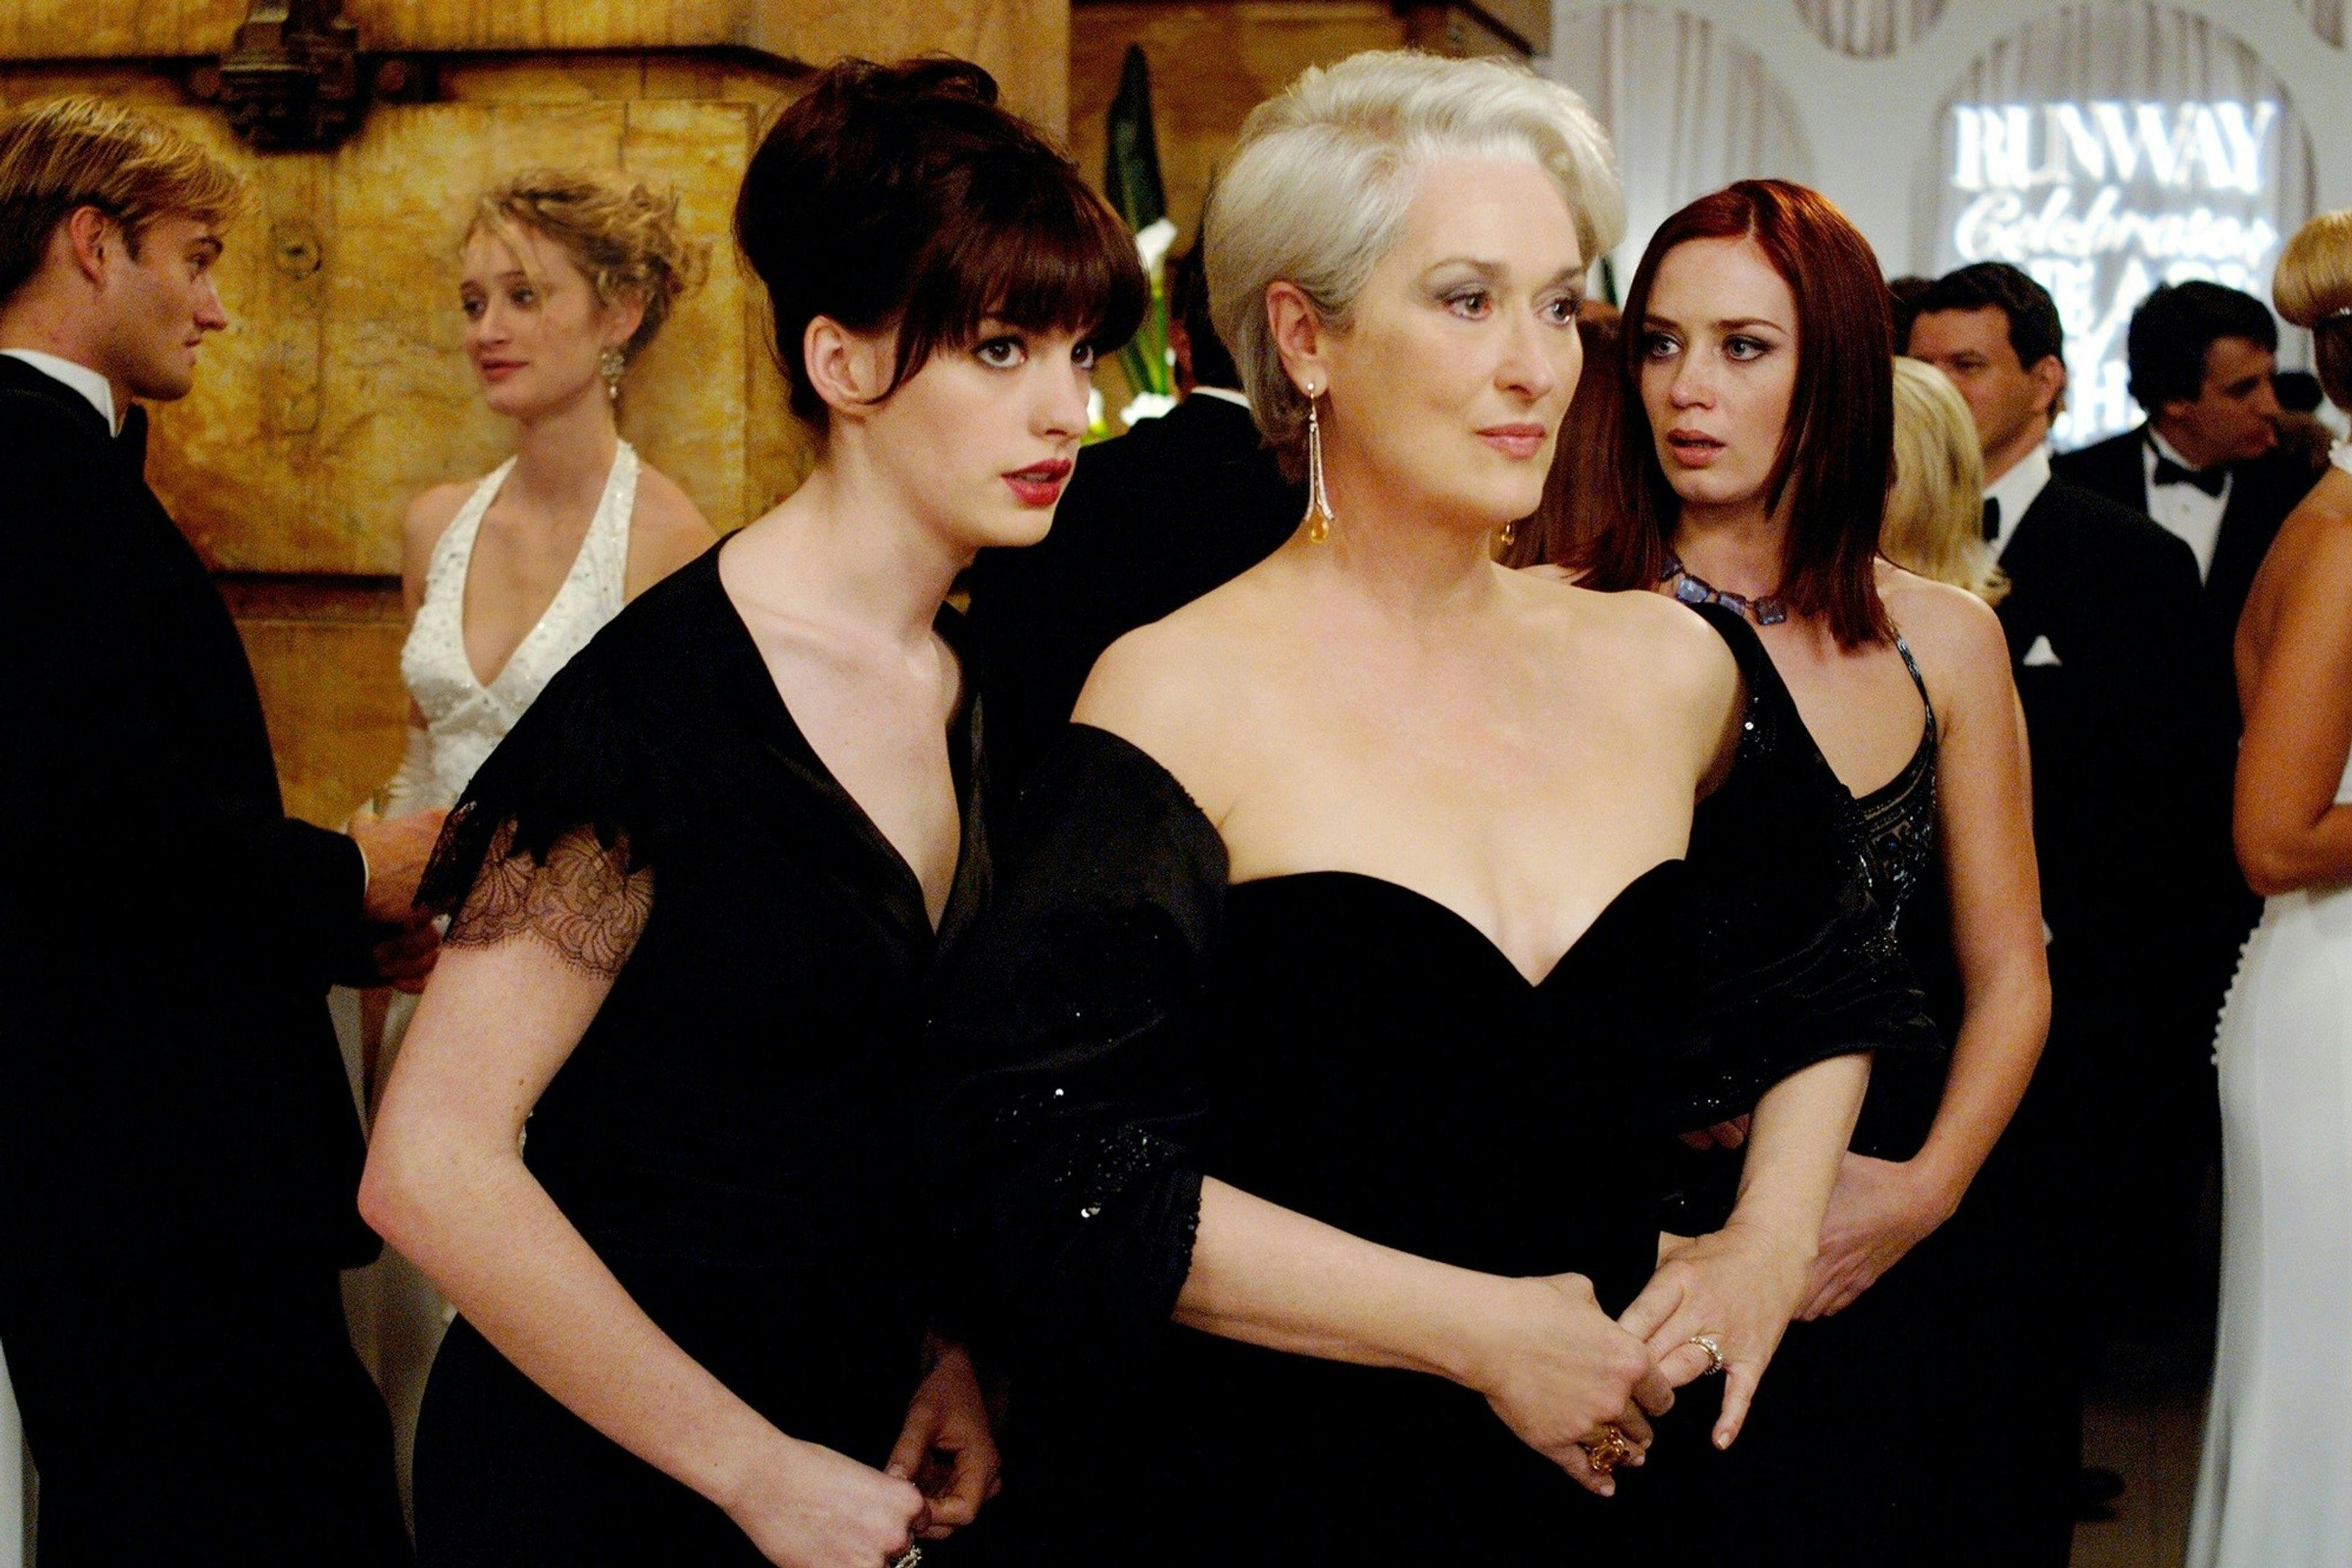  Anne Hathaway, Meryl Streep y Emily Blunt dando vida a Andy Sachs, Miranda Priestly y Emily -respectivamente- en 'El diablo viste de prada' (2006)